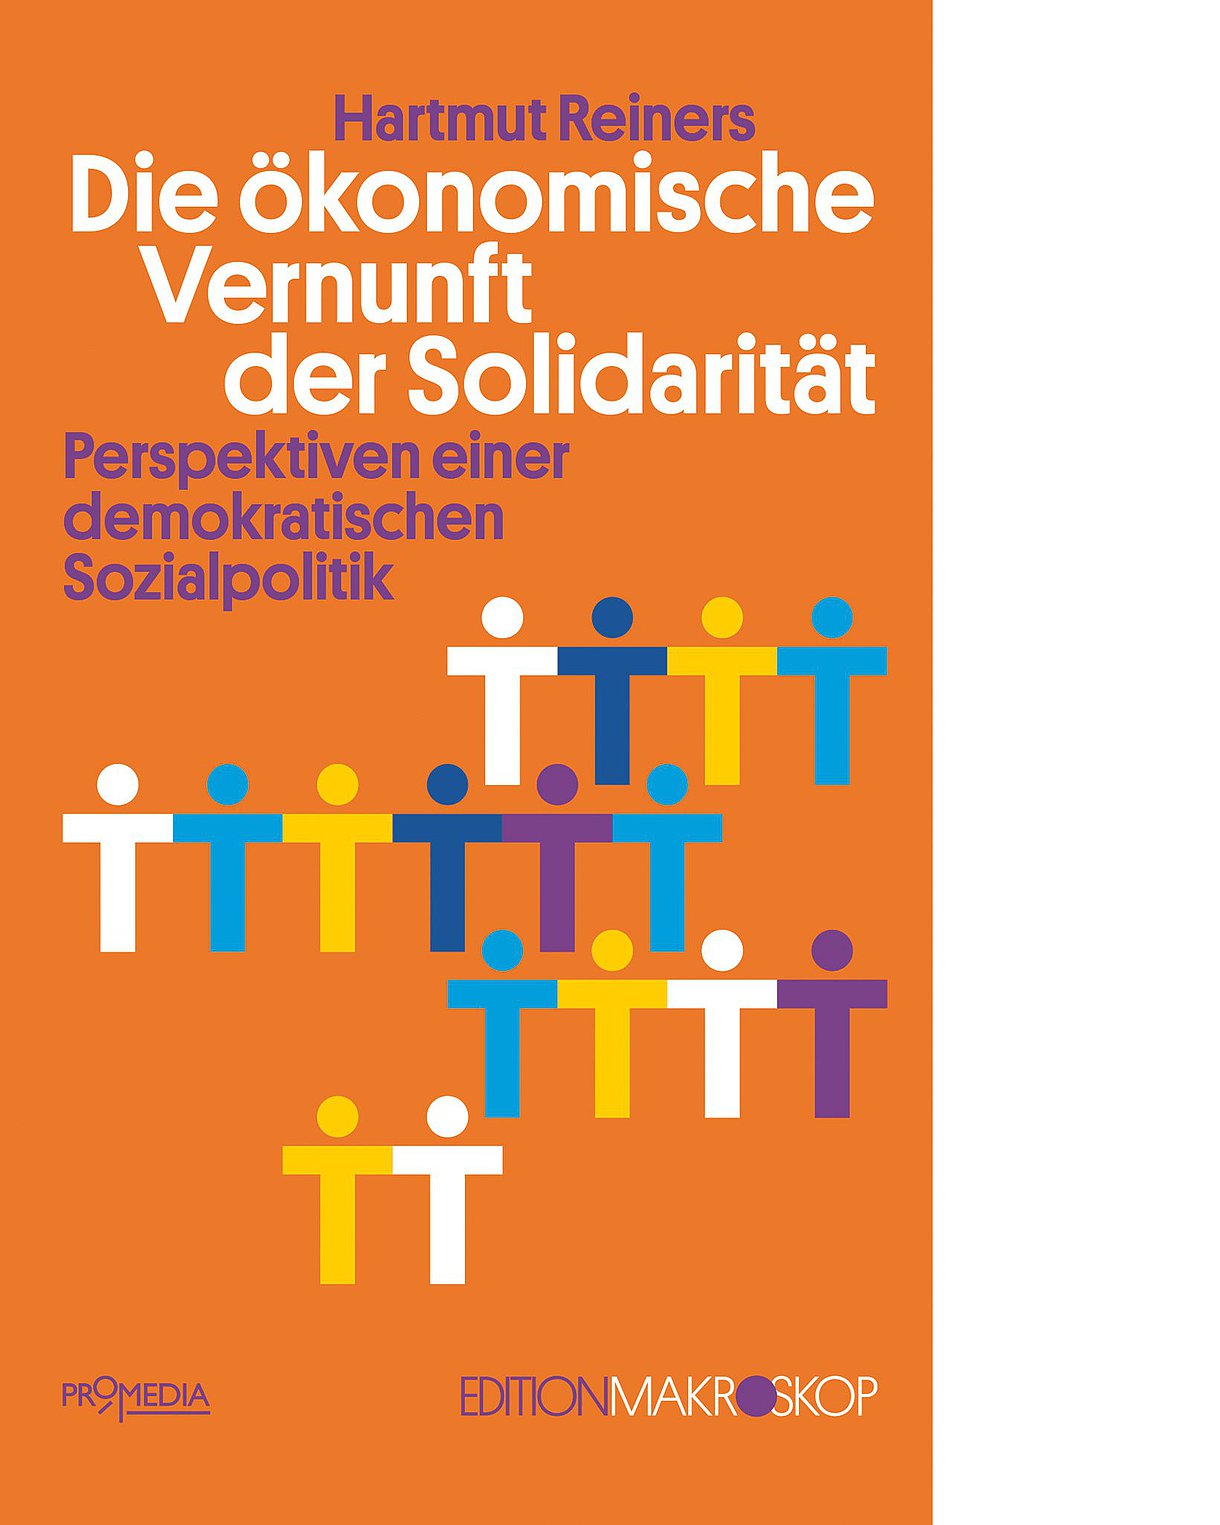 Foto: Buchcover "Die ökonomische Vernunft der Solidarität" von Hartmut Reiners.